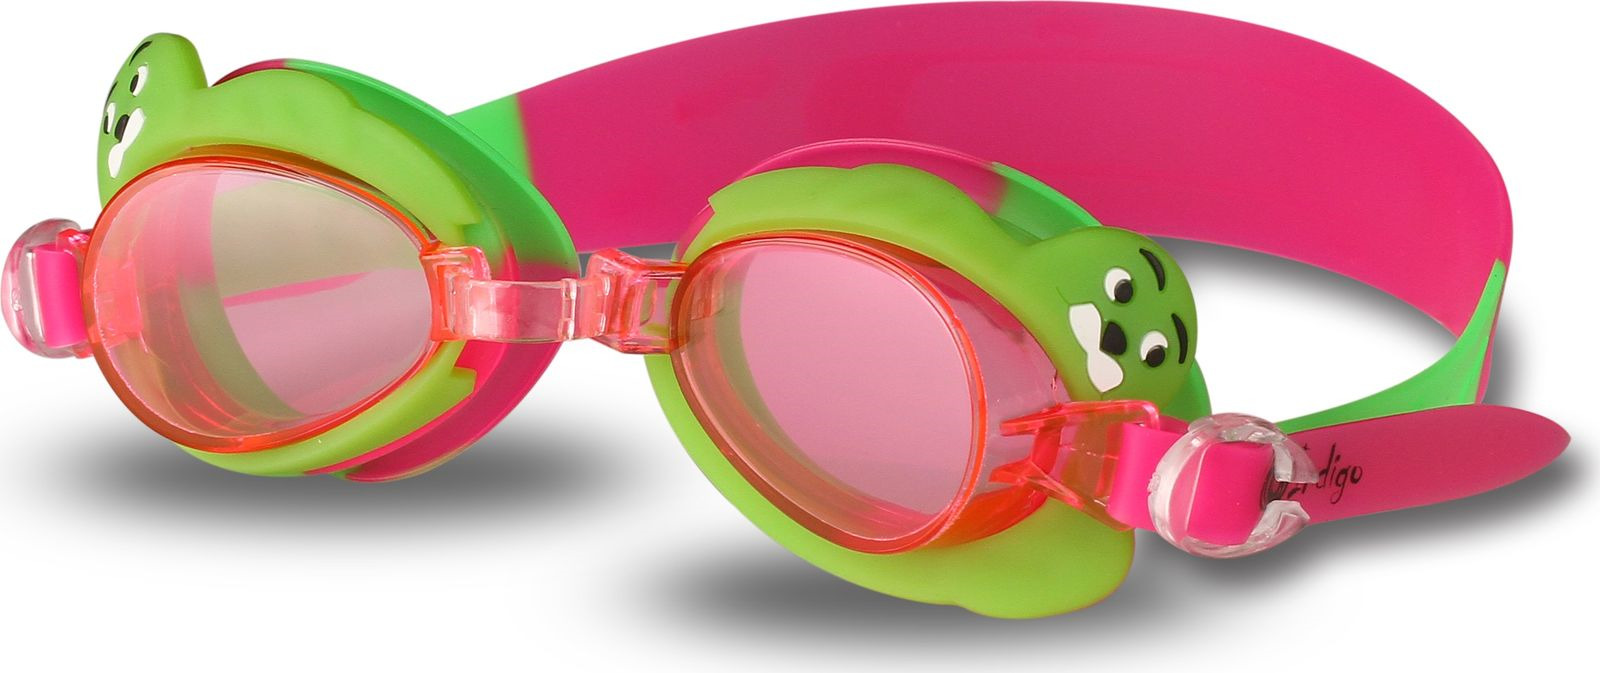 Очки для плавания детские Indigo Тюлень, 1765 G, розовый, зеленый